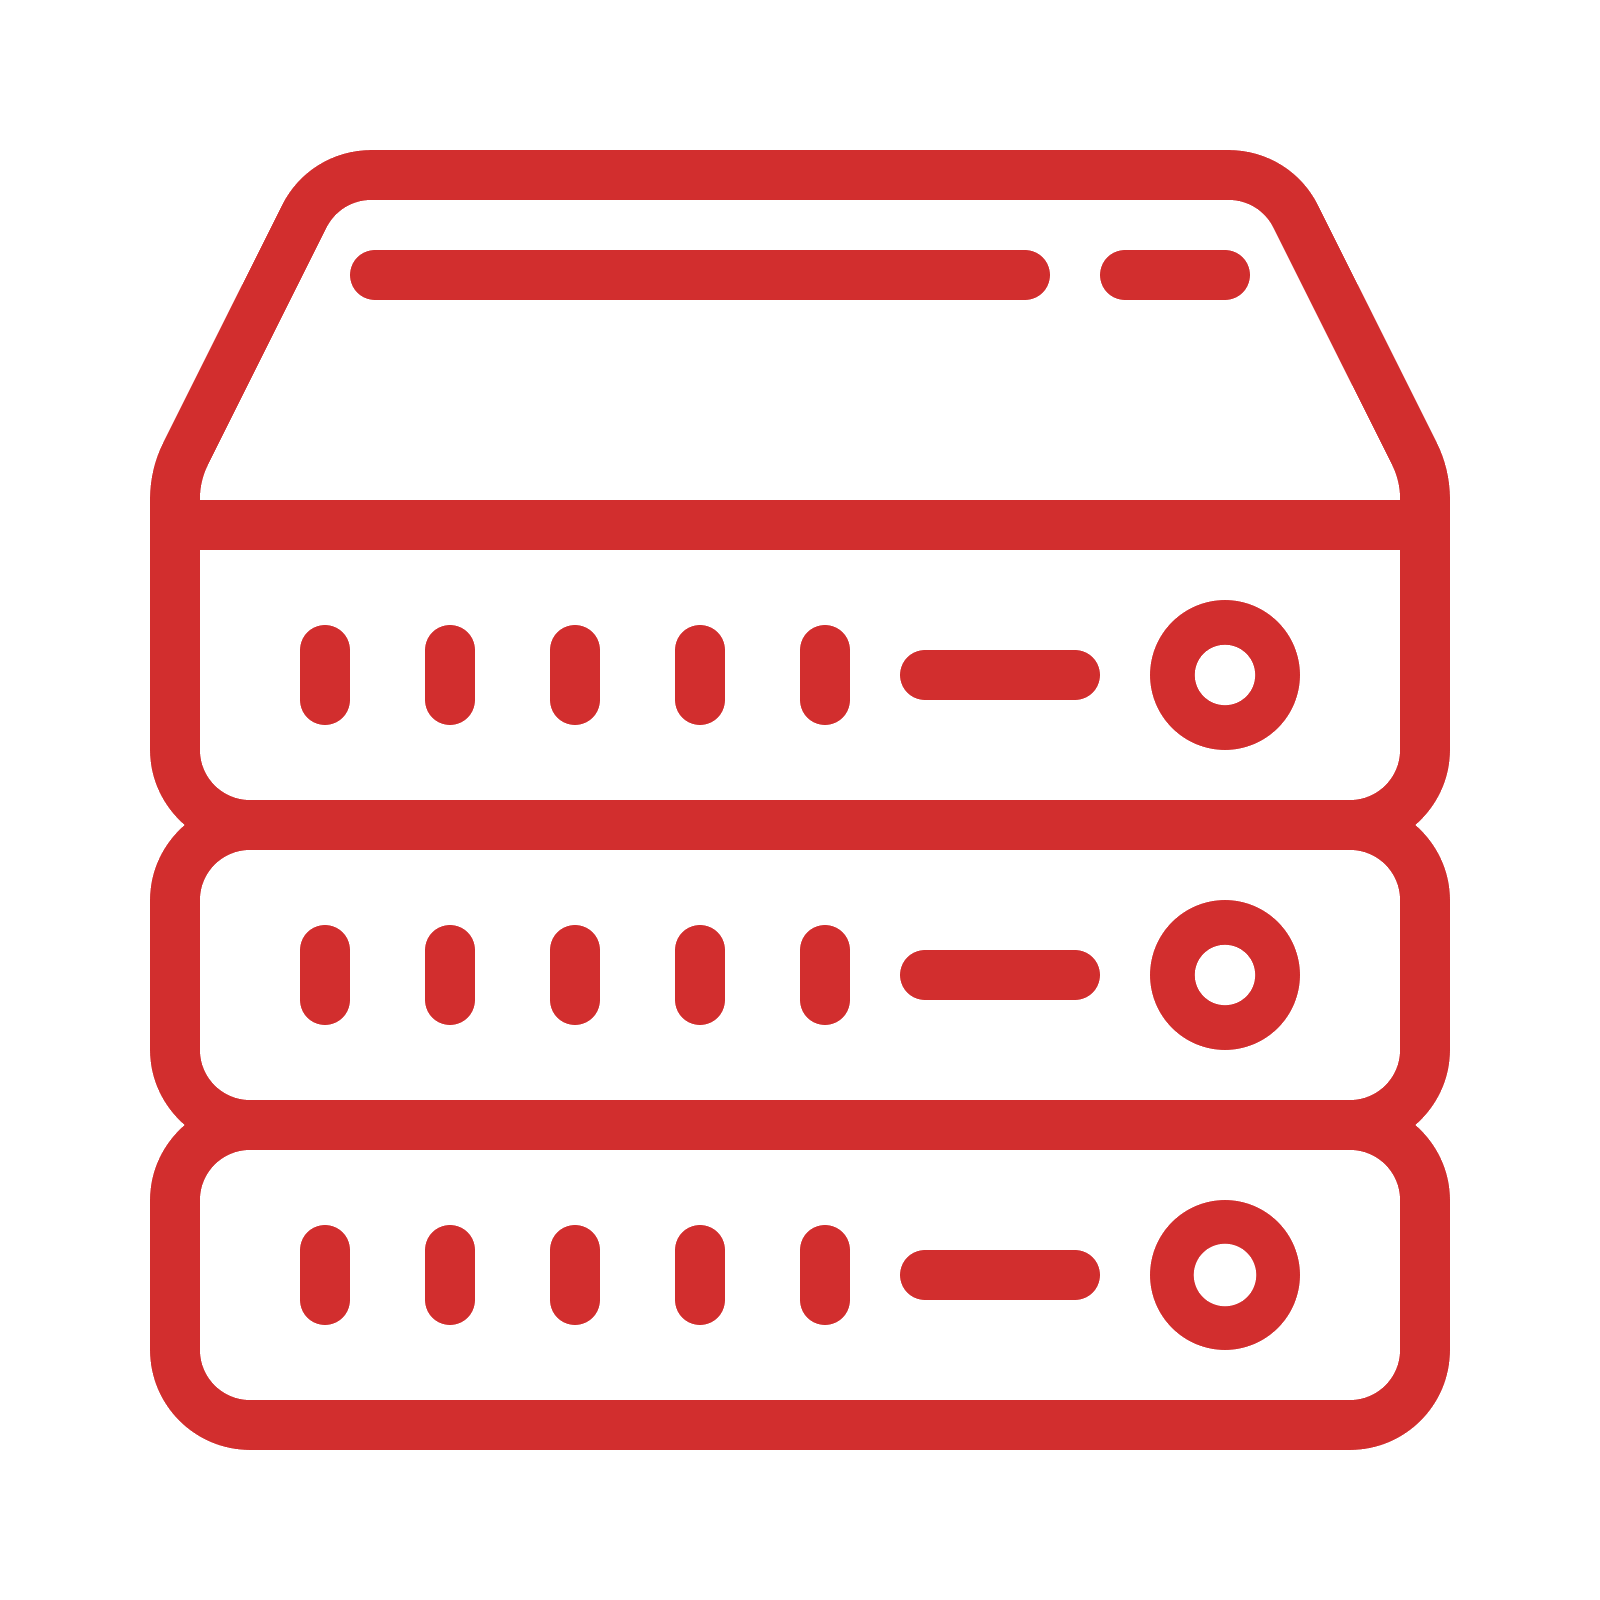 Server logo. Значок сервера. Пиктограмма серверная. Пиктограммы серверного оборудования. Иконка серверное оборудование.